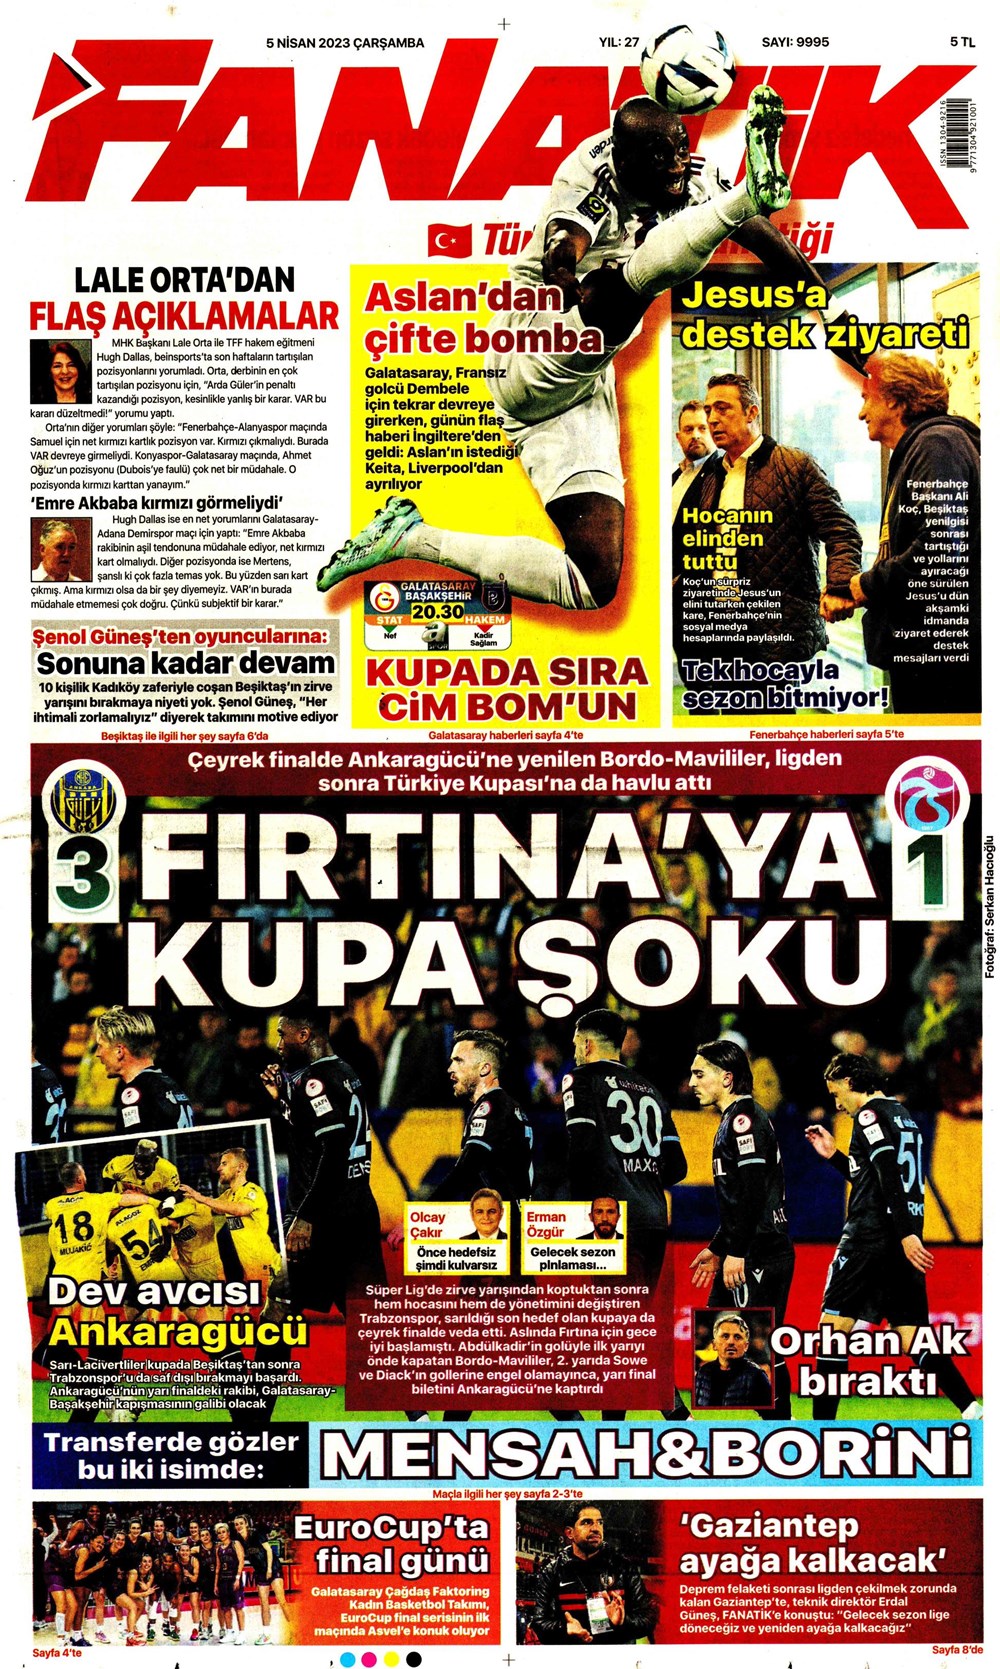 "Dünyada kimse buna penaltı demez" - Sporun manşetleri (5 Nisan 2023)  - 2. Foto